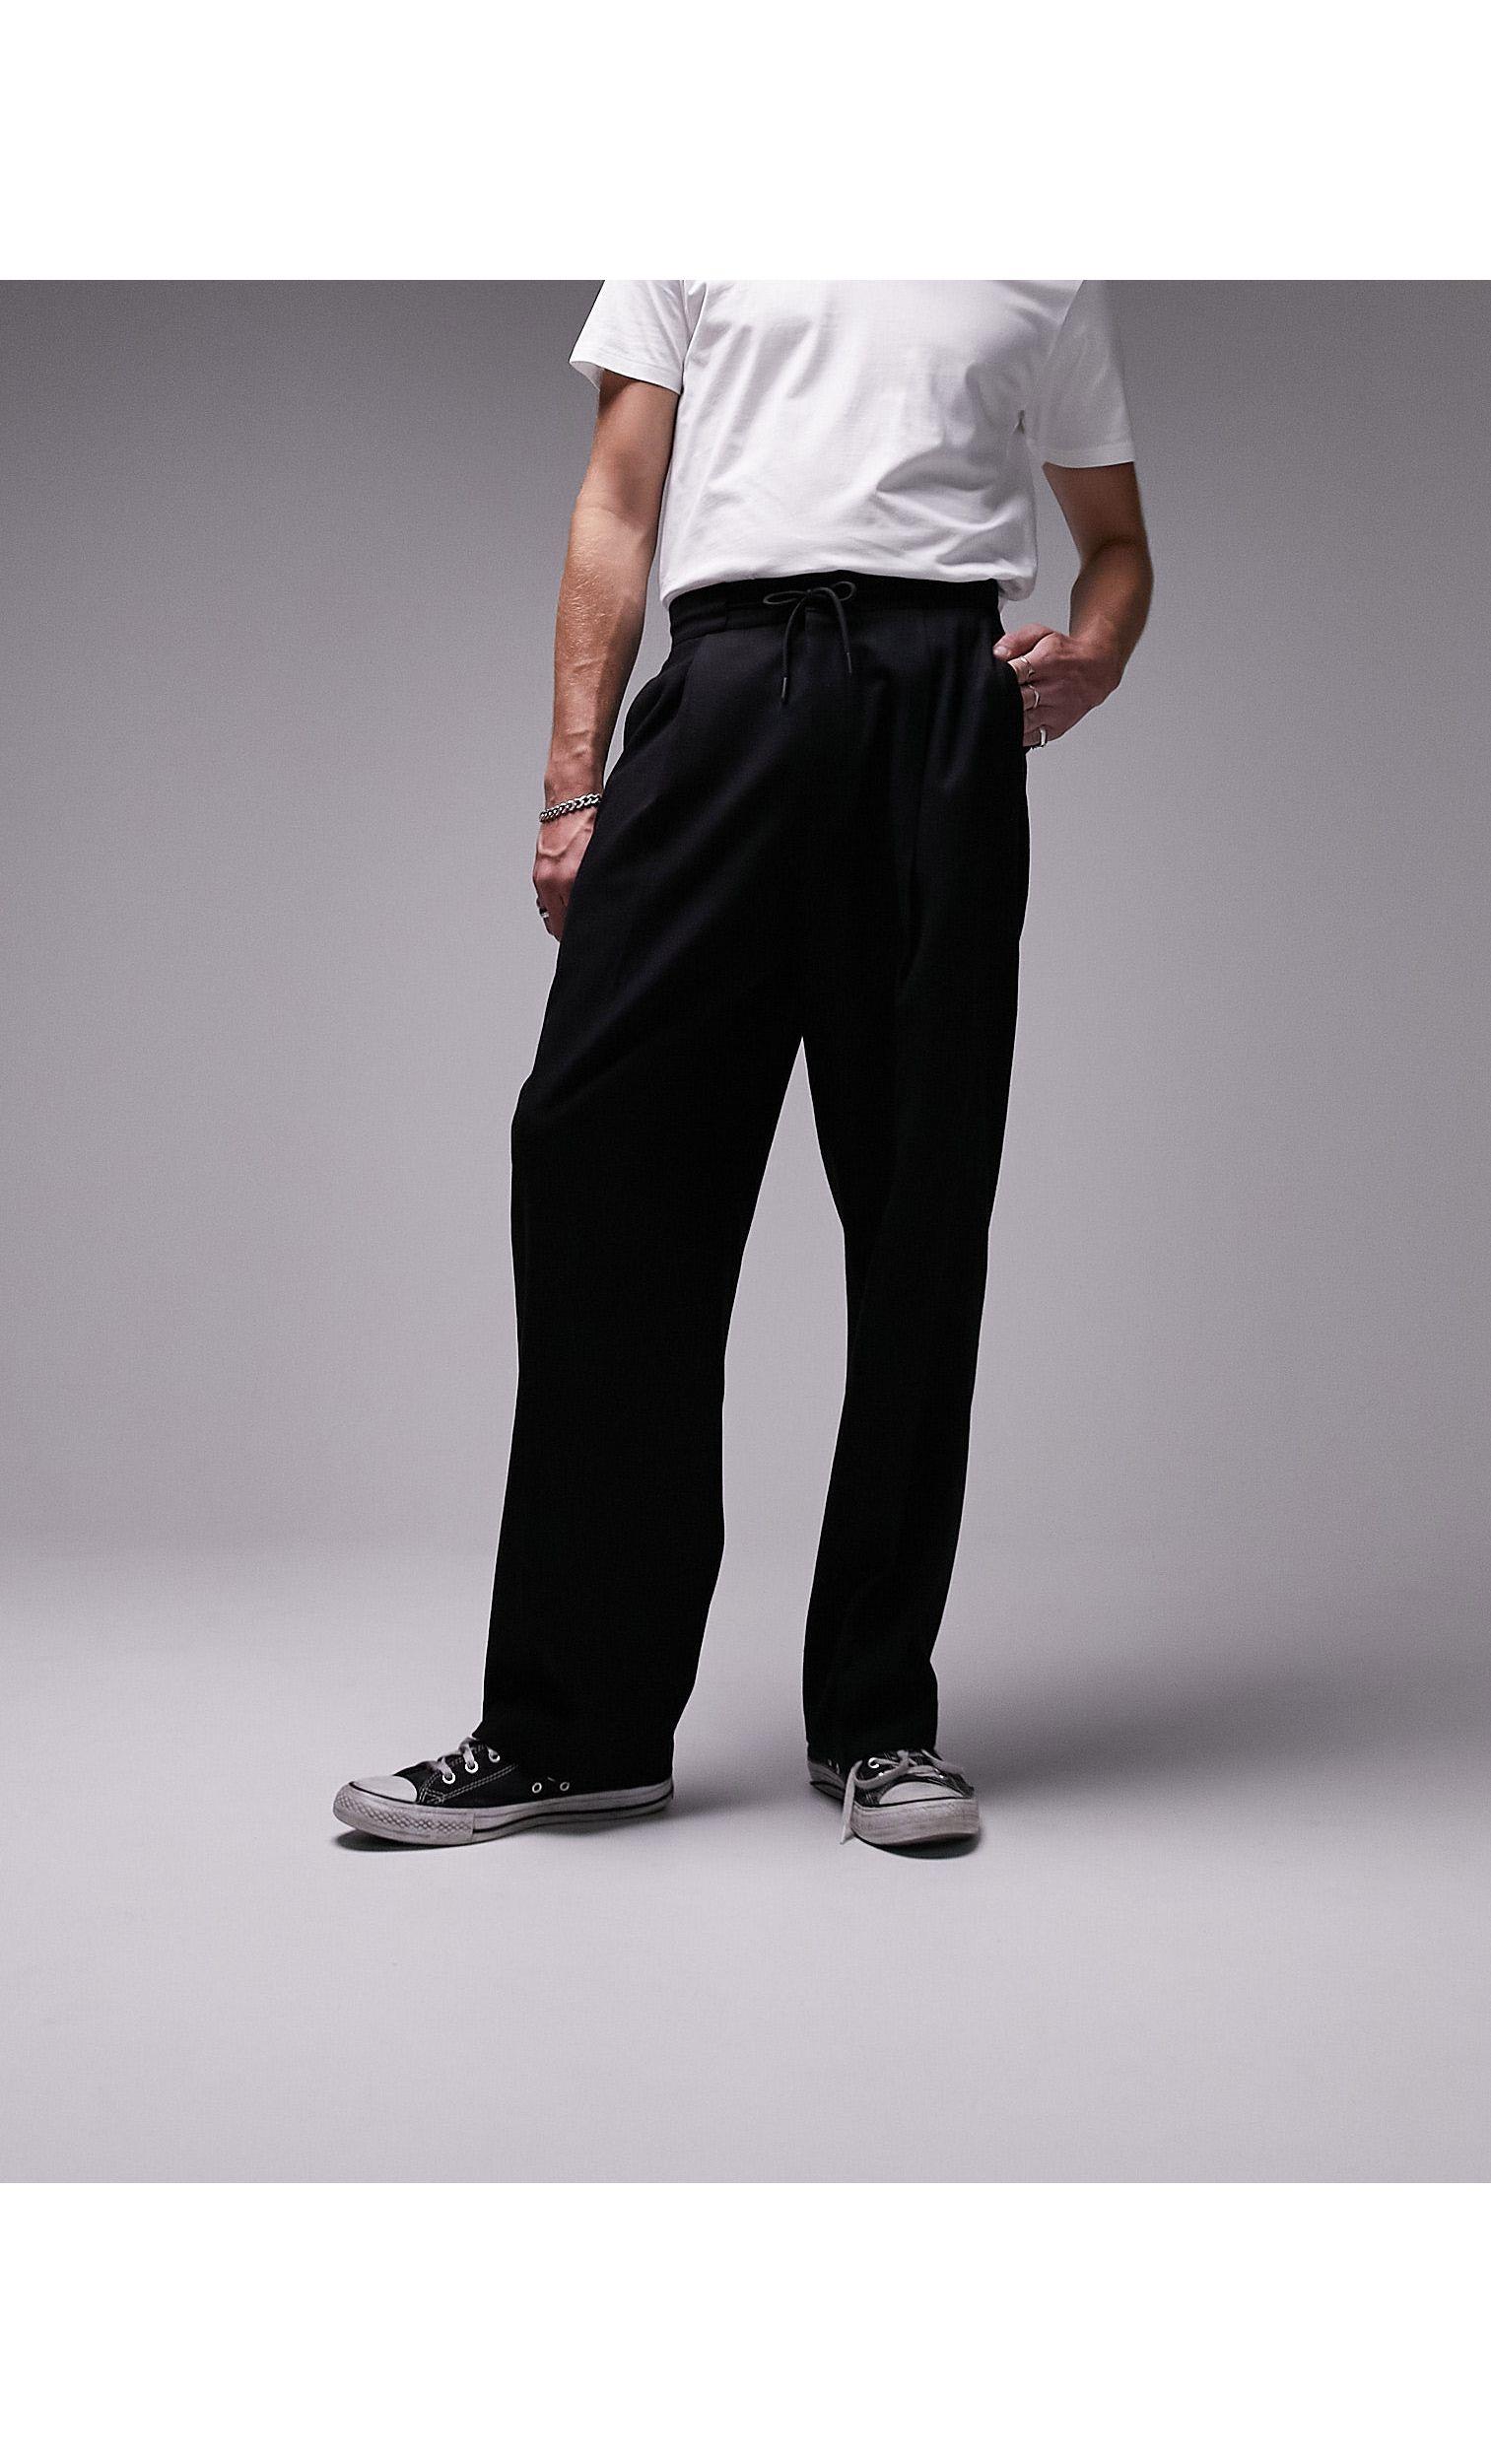 Topman Le Slim Fit Cropped Plaid Pants, $38 | Nordstrom | Lookastic